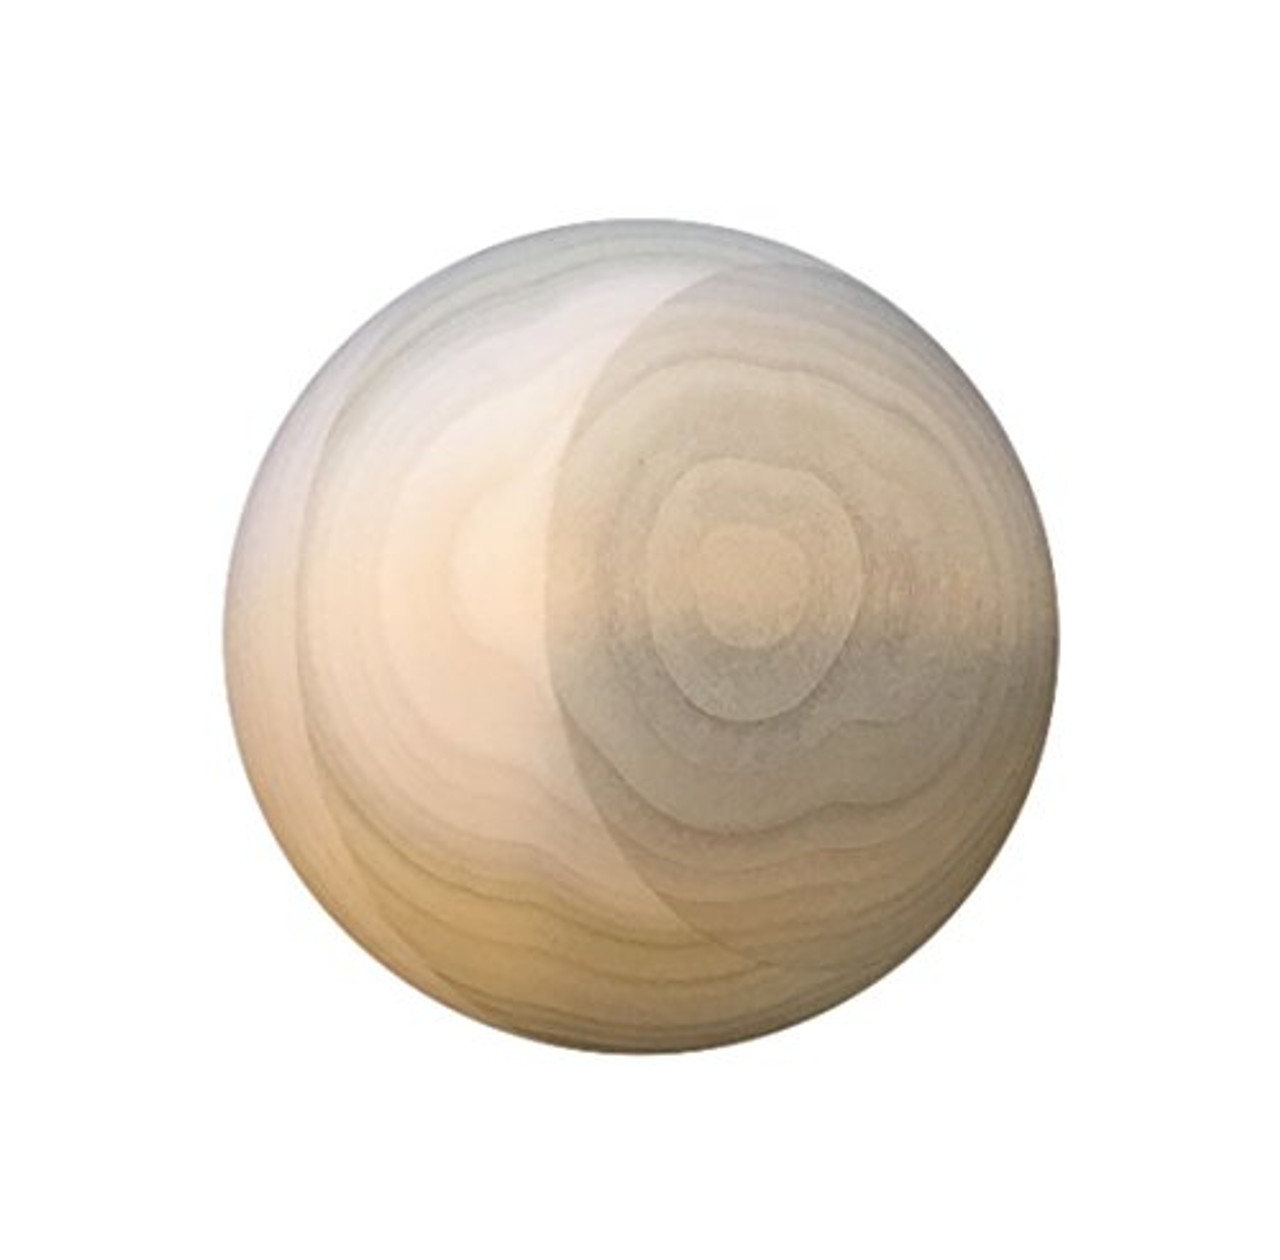 Wooden Sphere 4".